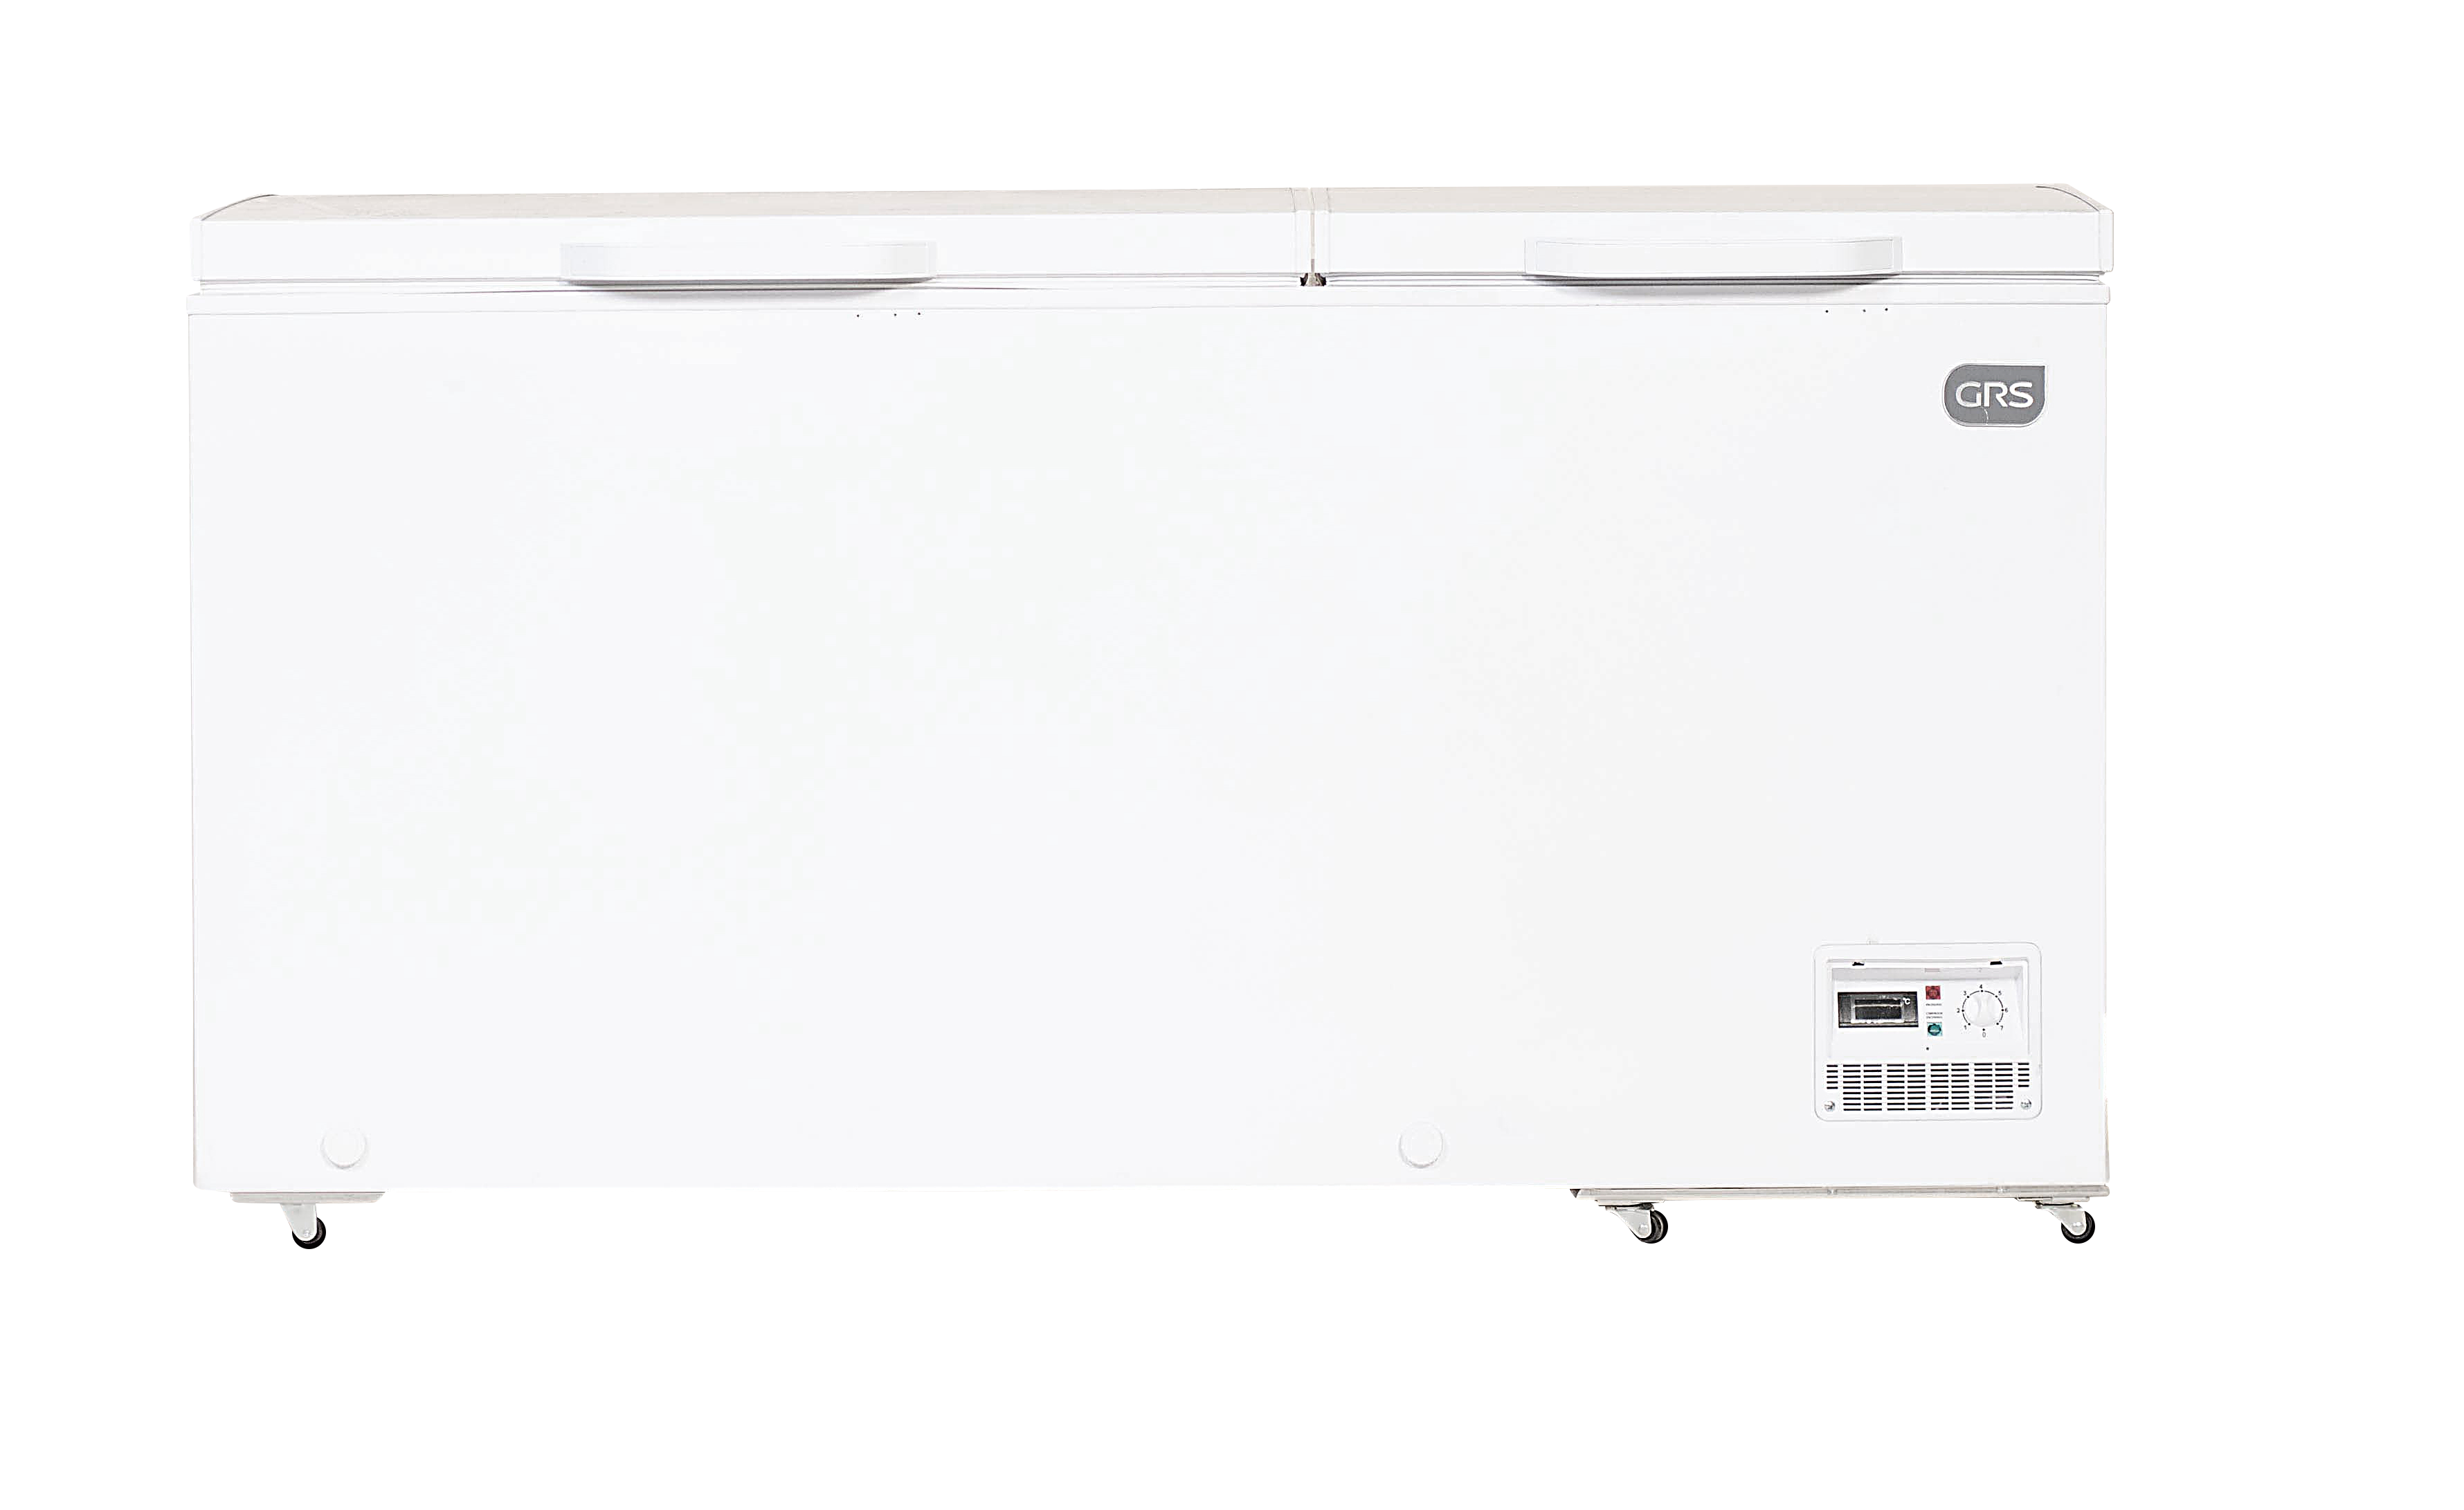 Venta de Congeladores  GRS Electrodomésticos Guatemala – GRS